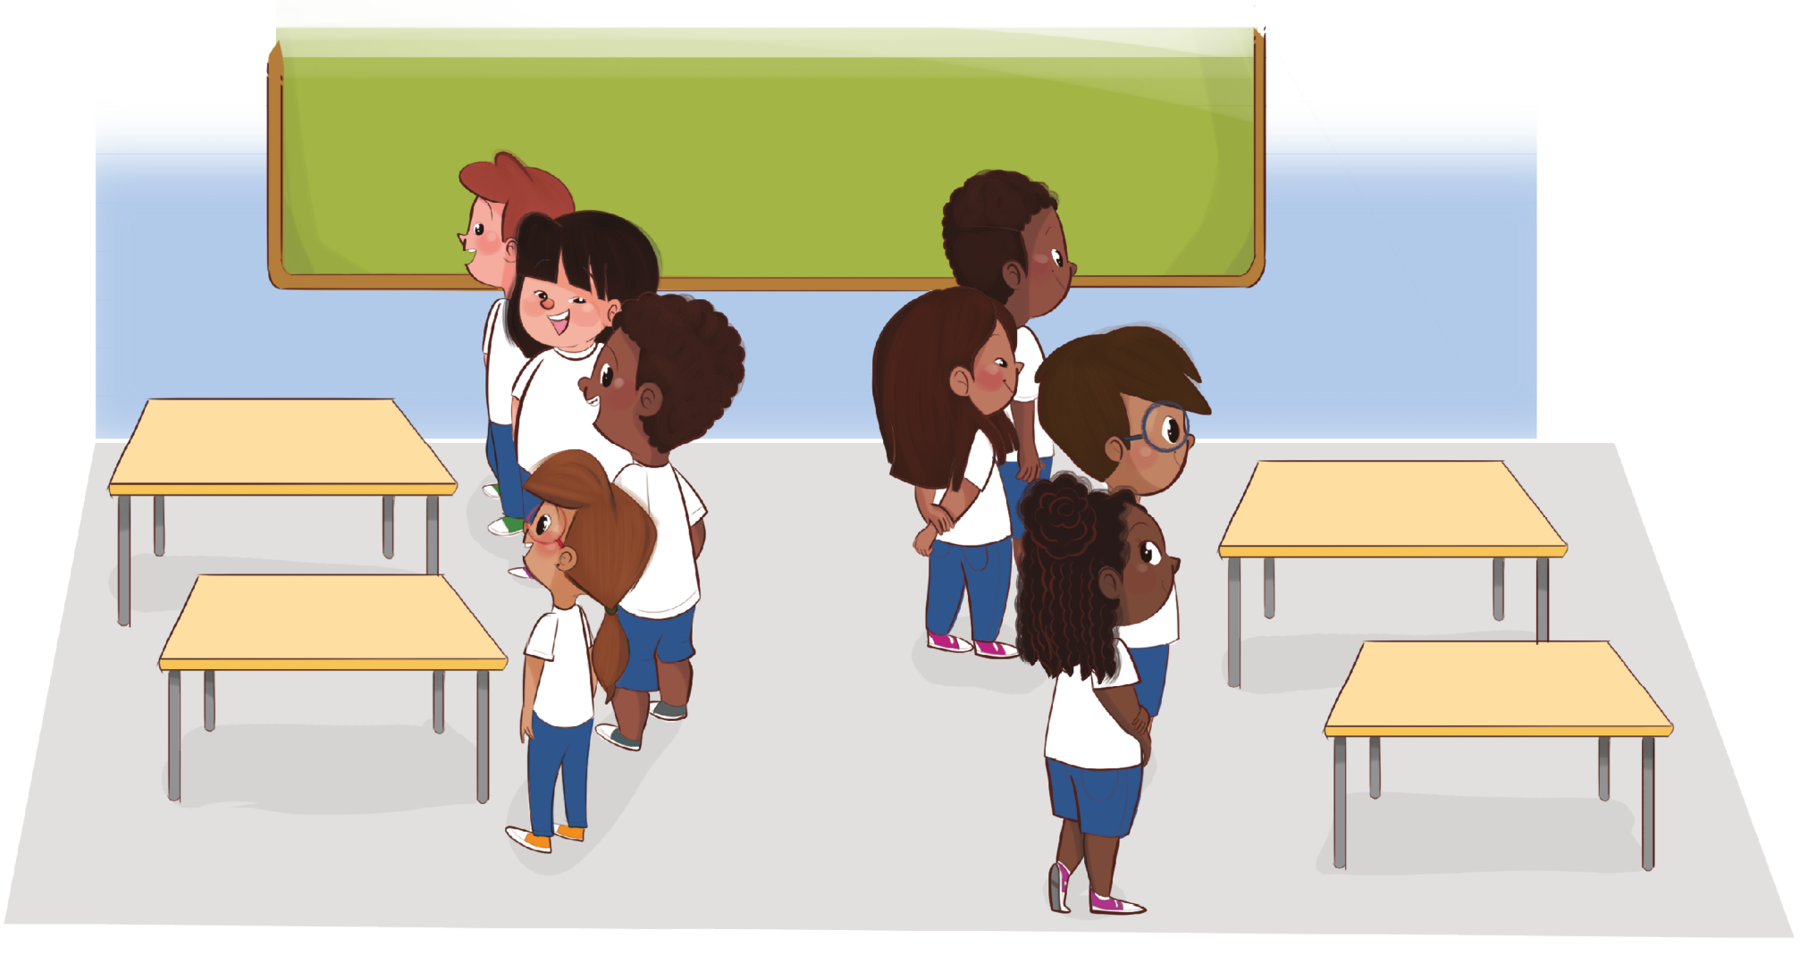 Ilustração. Dois grupos de crianças uniformizadas com camiseta branca e shorts azuis estão enfileiradas e de costas um para o outro. À frente de cada grupo, há duas mesas. Ao fundo, uma lousa verde.